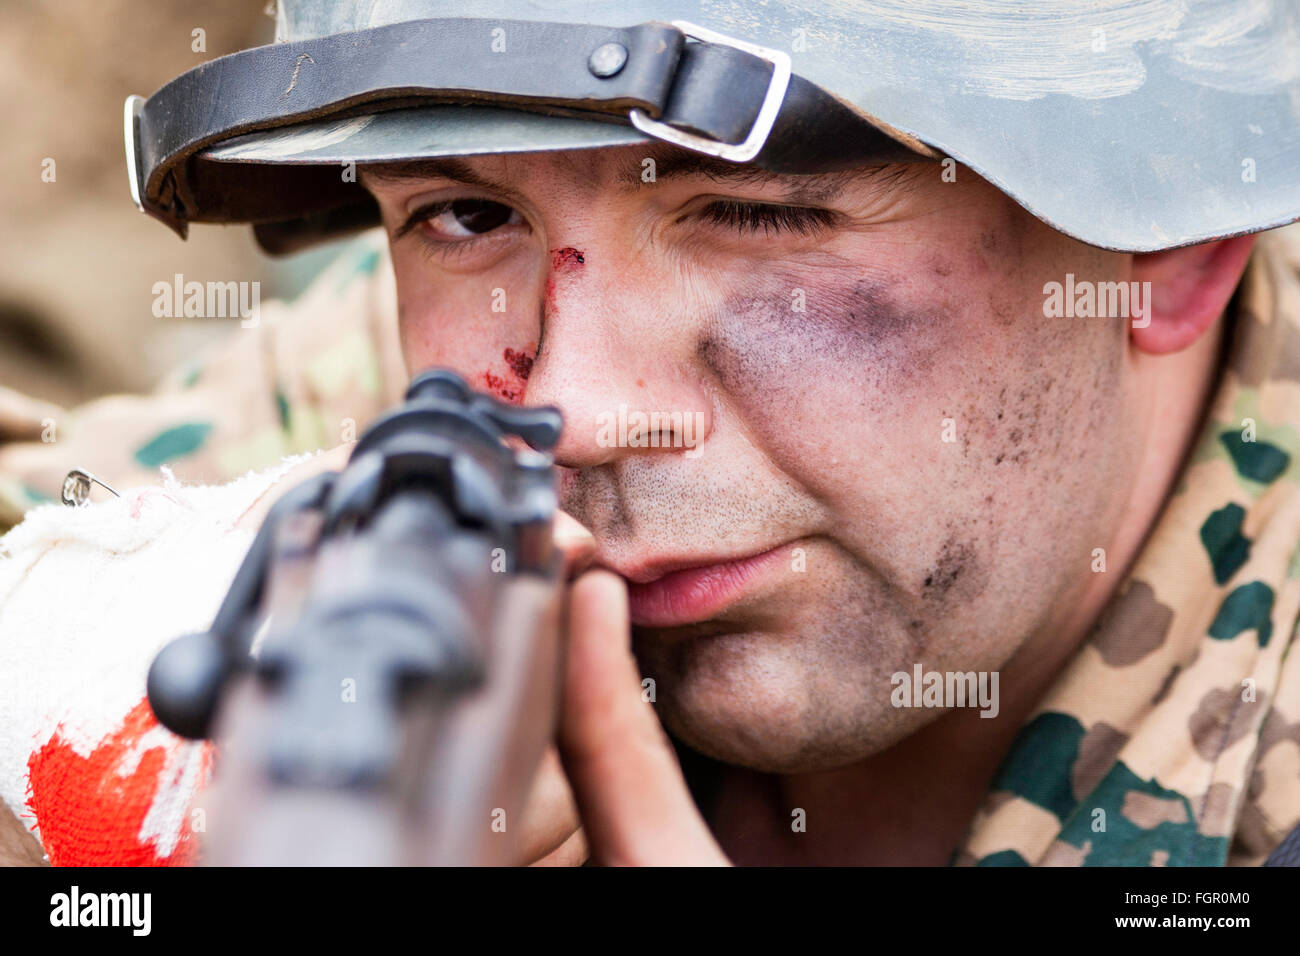 Zweiten Weltkrieg Re-enactment. Nahaufnahme des Gesichts von deutschen Soldaten, wobei das Ziel, die Sehenswürdigkeiten von seinem Gewehr. Auge - Kontakt. Stockfoto